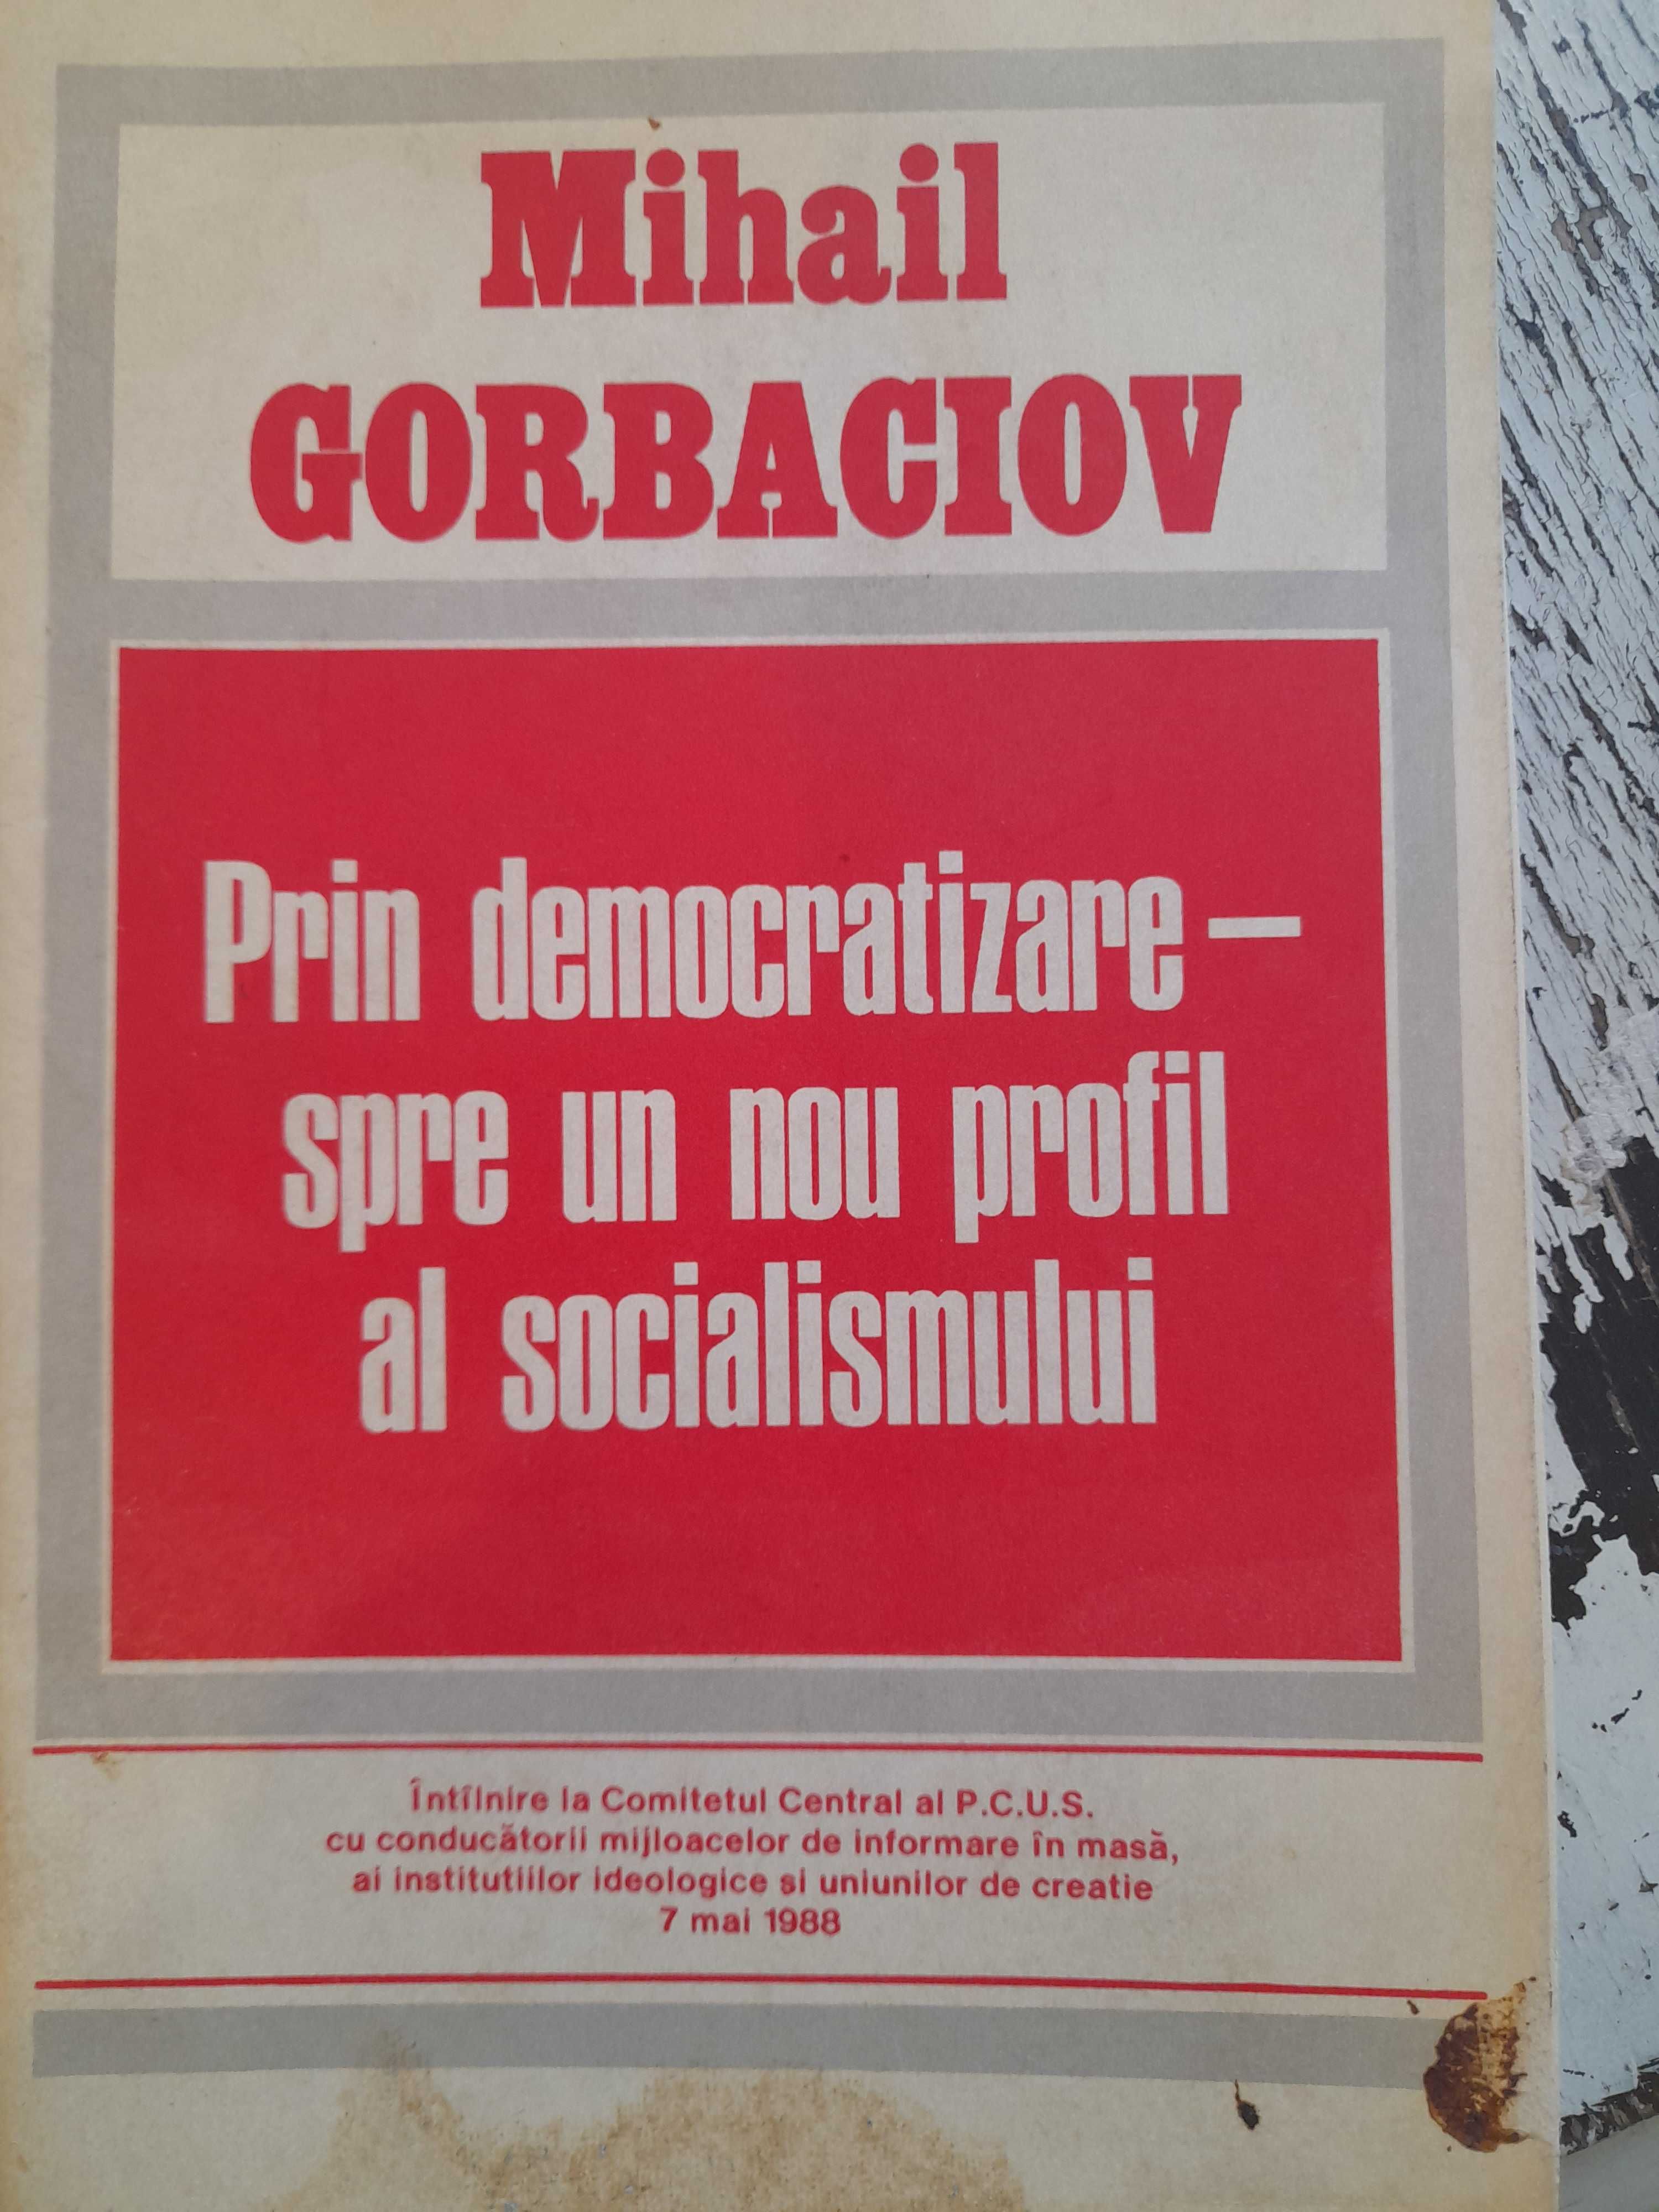 Colecție fascicule PERESTROIKA și vizita Gorbaciov în România